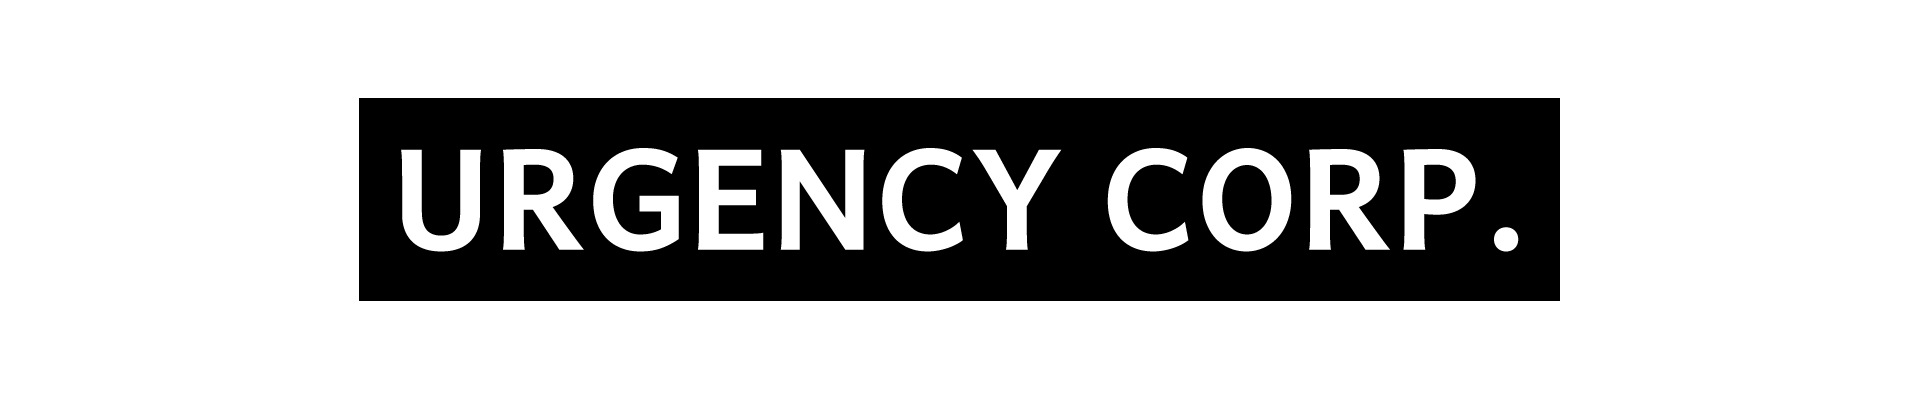 Urgency Corp.